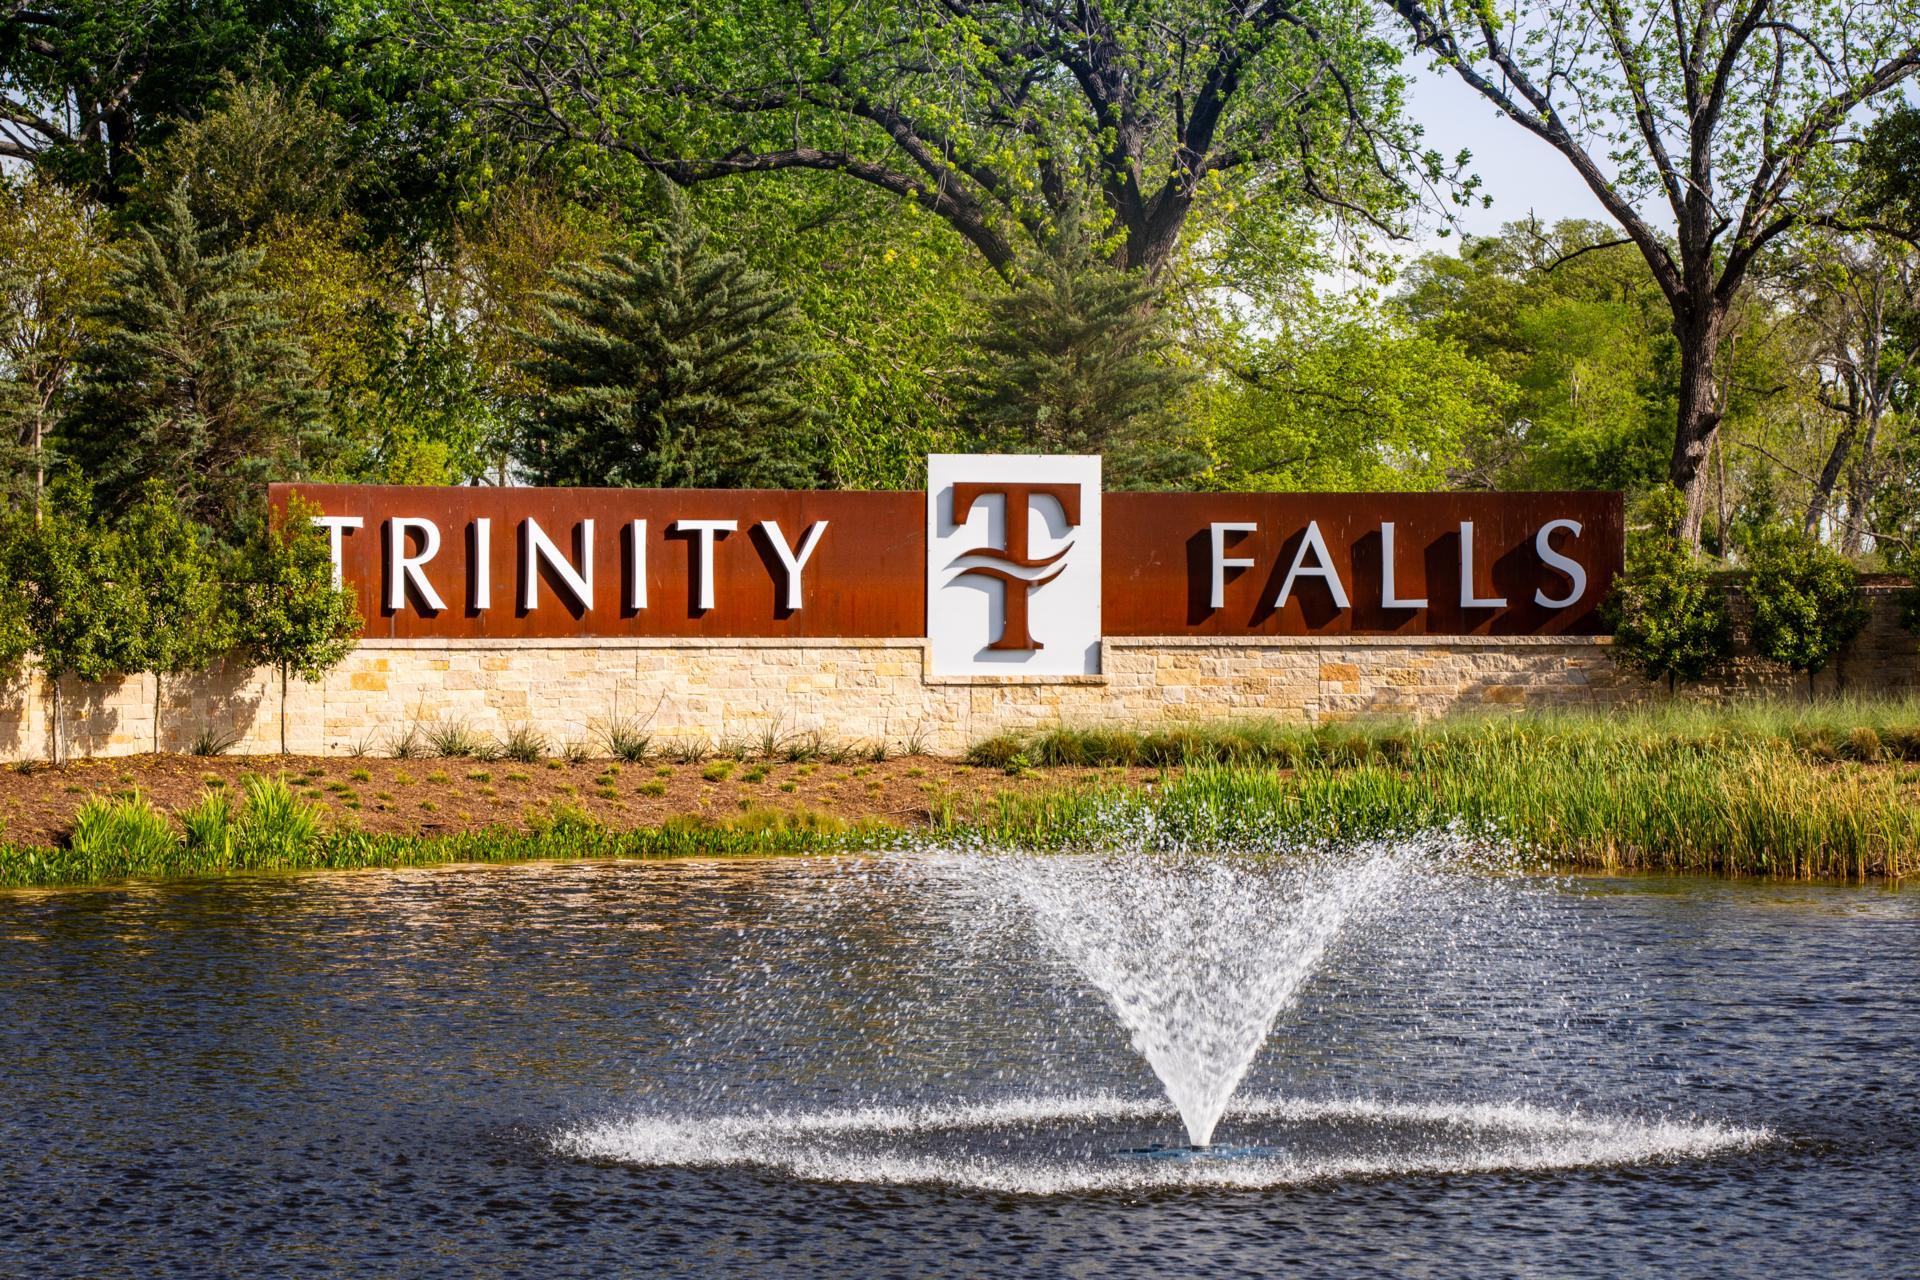 The Trinity Falls Entrance